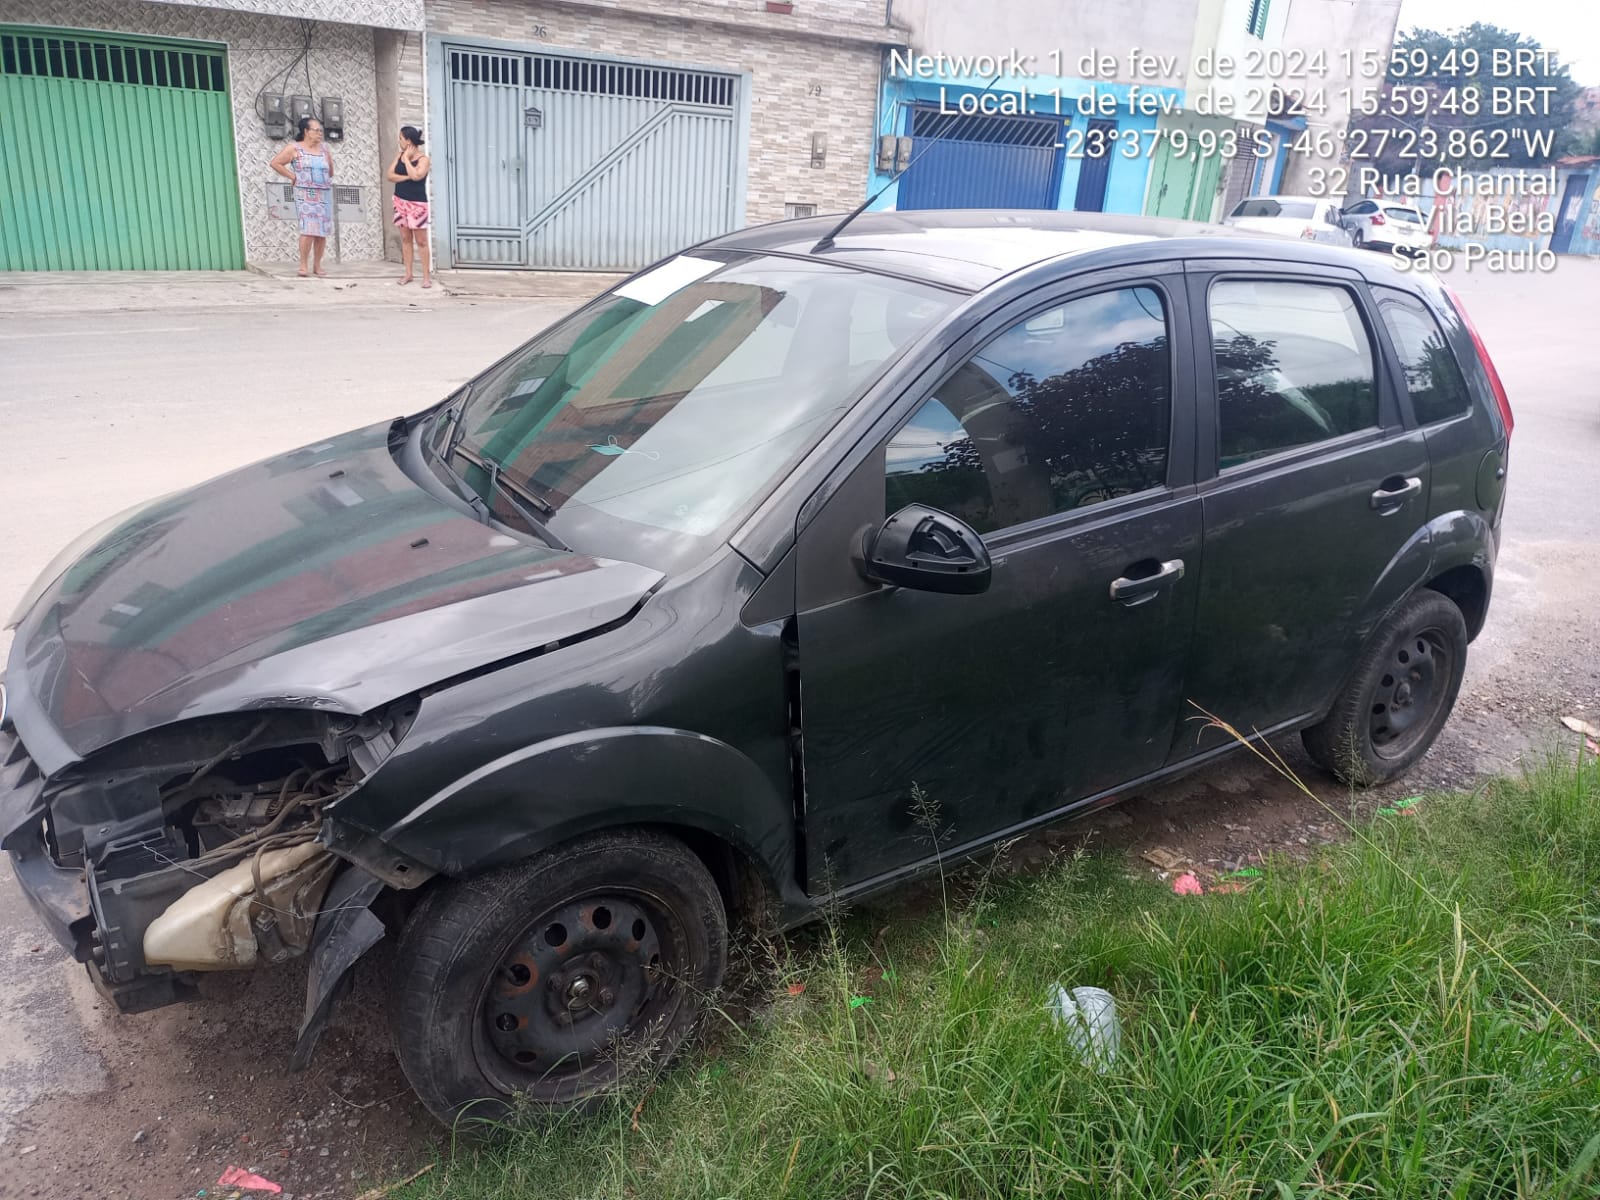 Carcaça de  veículo que teve parte dianteira retirada, abandonado em rua identificada como Chantal, Vila Bela